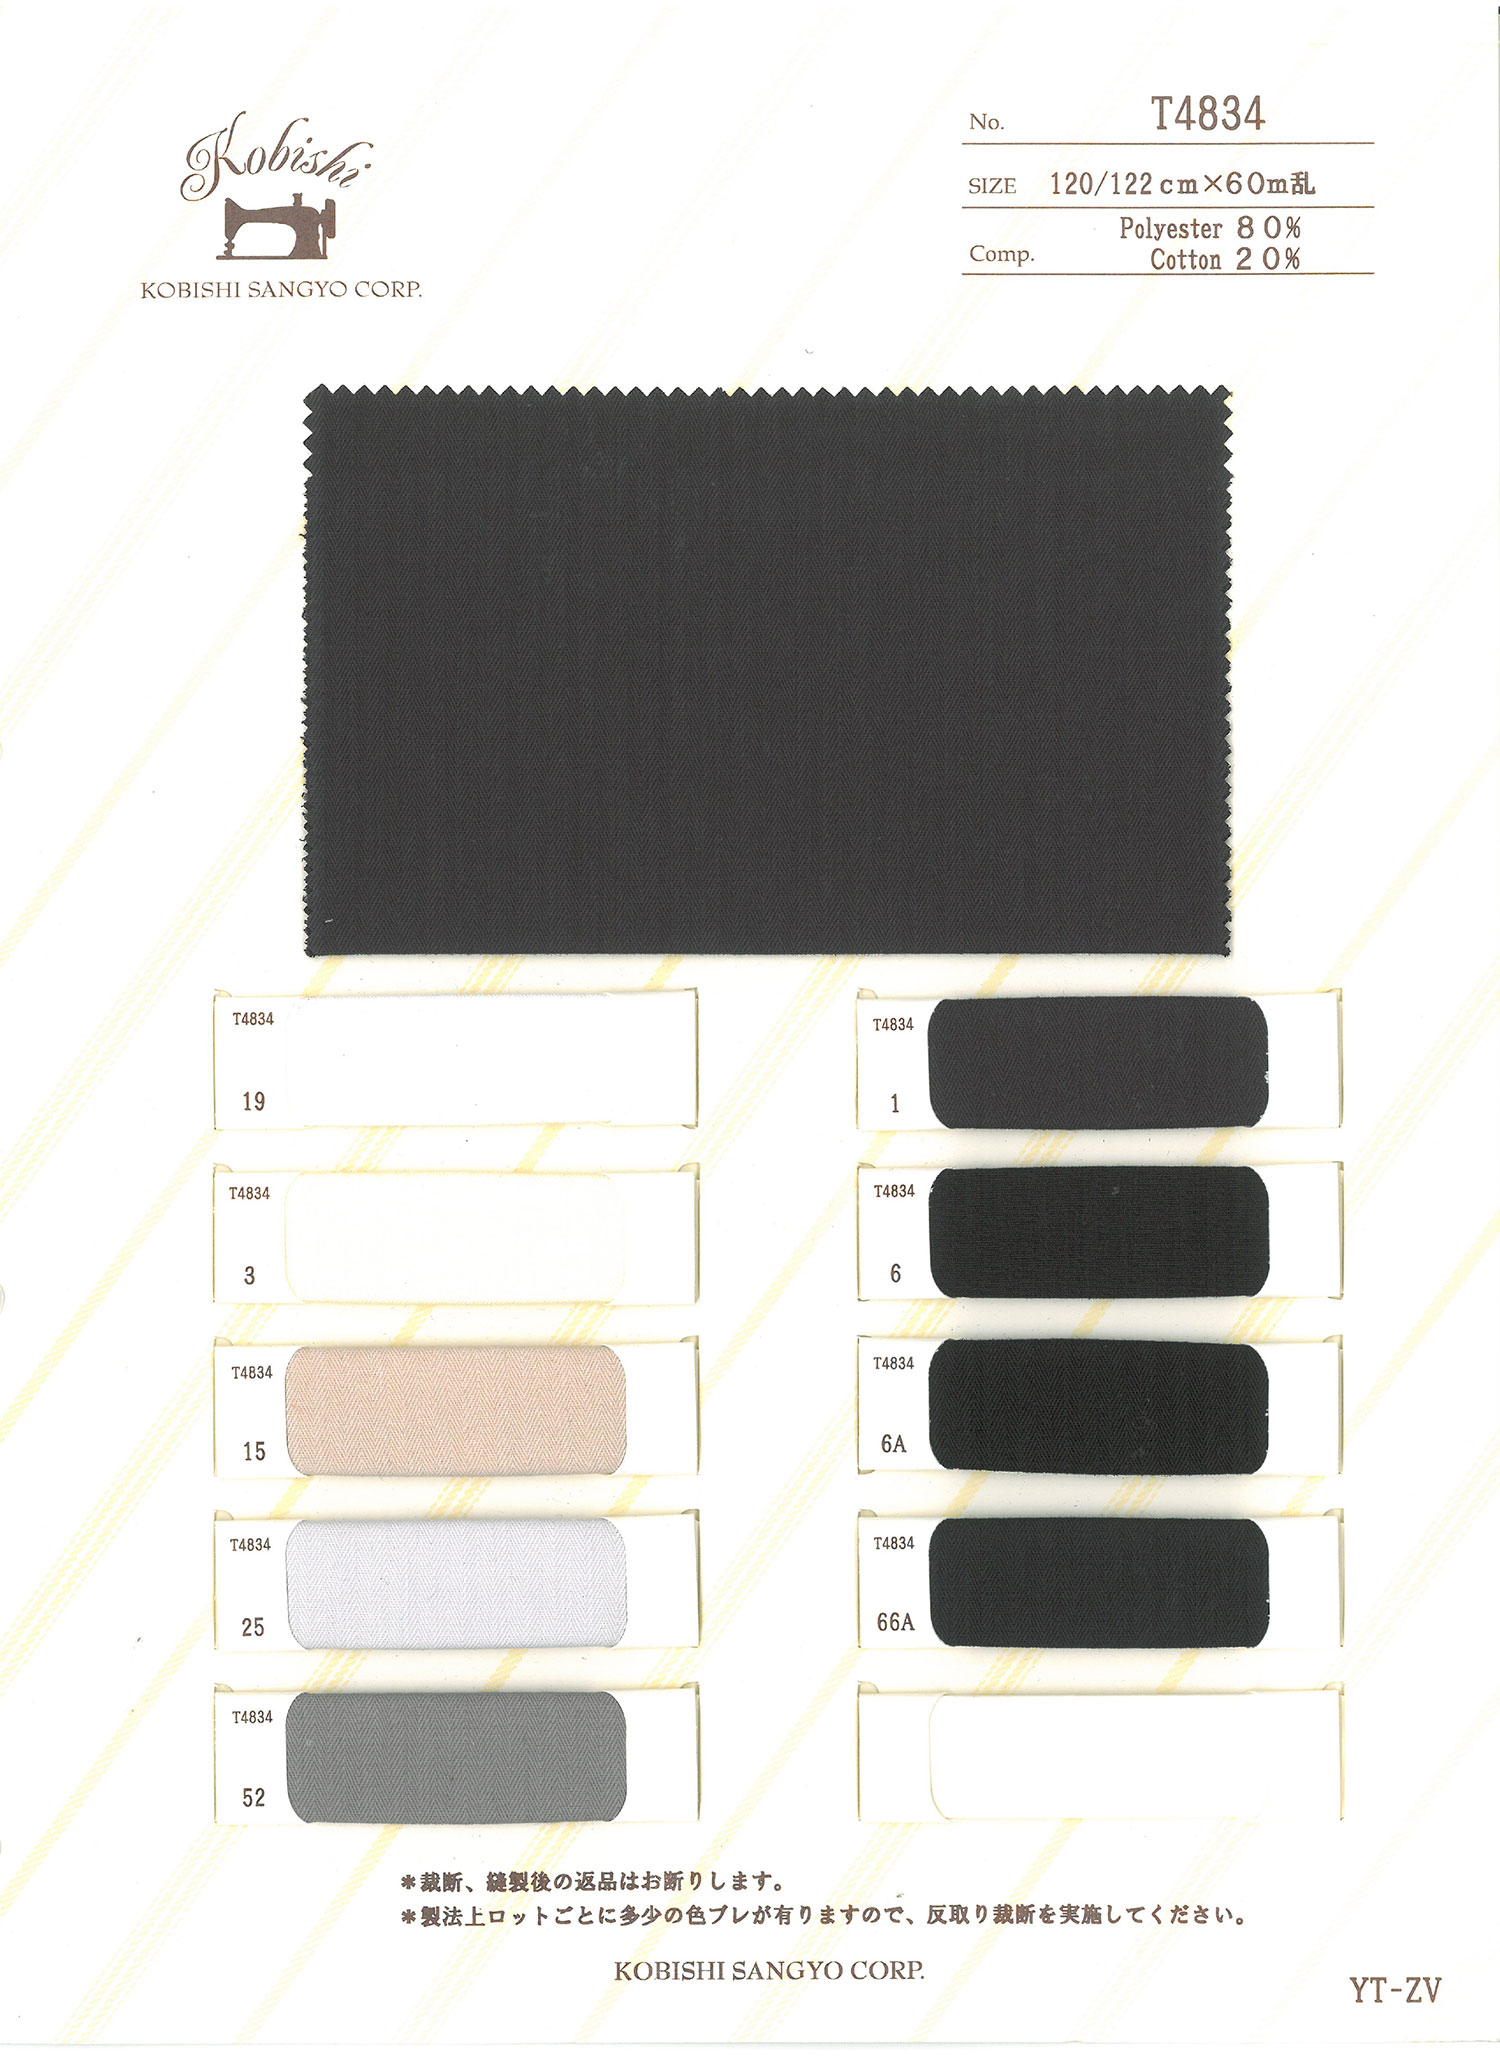 T4834 Forro De Bolso De Tecido Sugi Aya Usado Com Linha Esquerda E Direita[Forro Do Bolso] Ueyama Textile